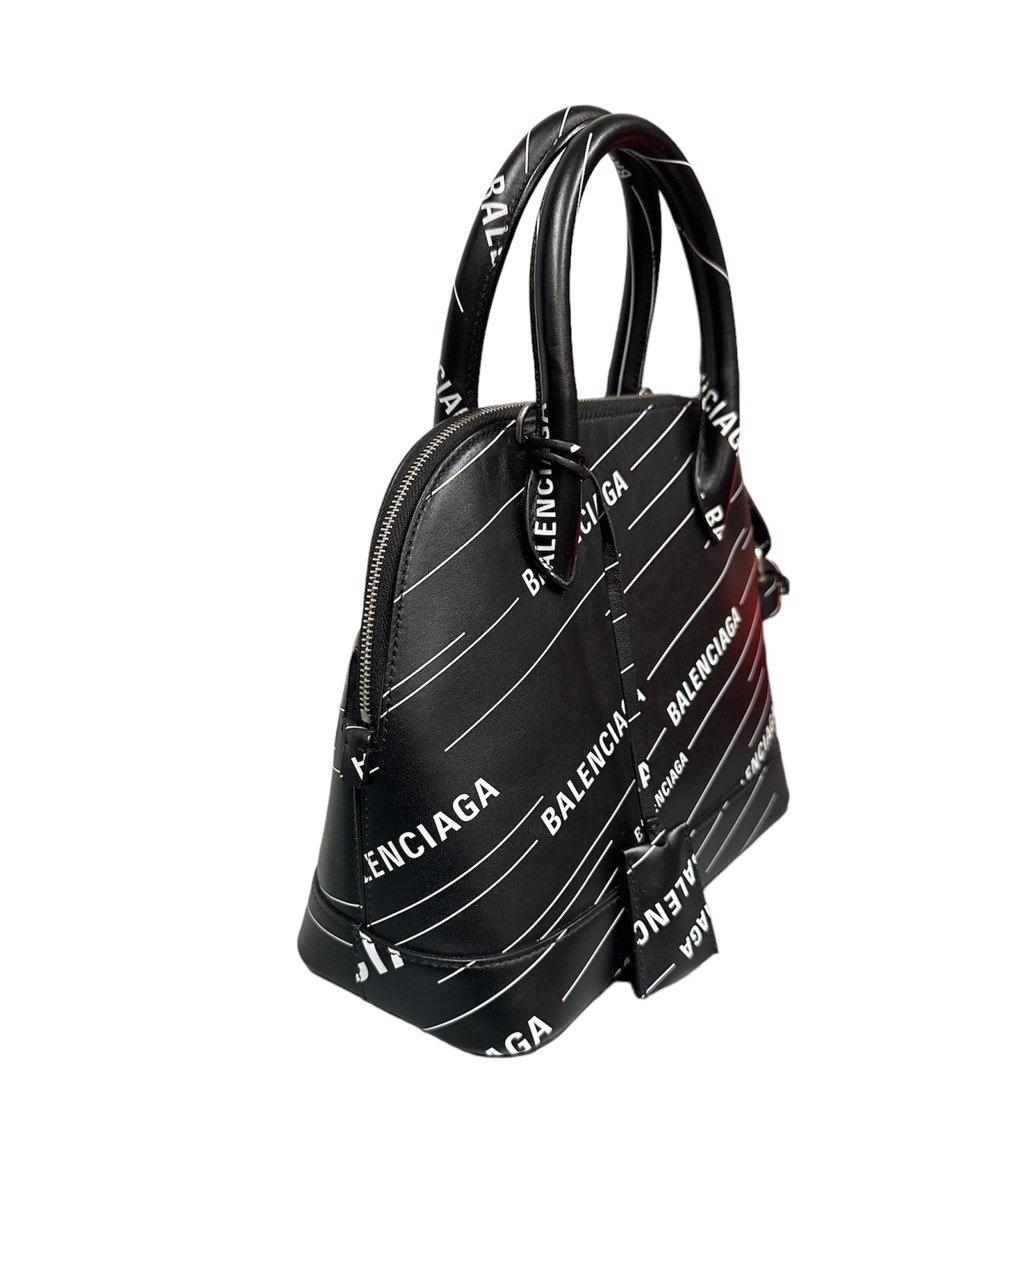 Balenciaga Tasche, Modell Ville mit Logodruck, aus schwarzem Leder, mit weißem Logodruck und silberner Hardware. Ausgestattet mit einem doppelten starren Griff aus Leder und einem abnehmbaren und verstellbaren Schulterriemen, um die Tasche in der